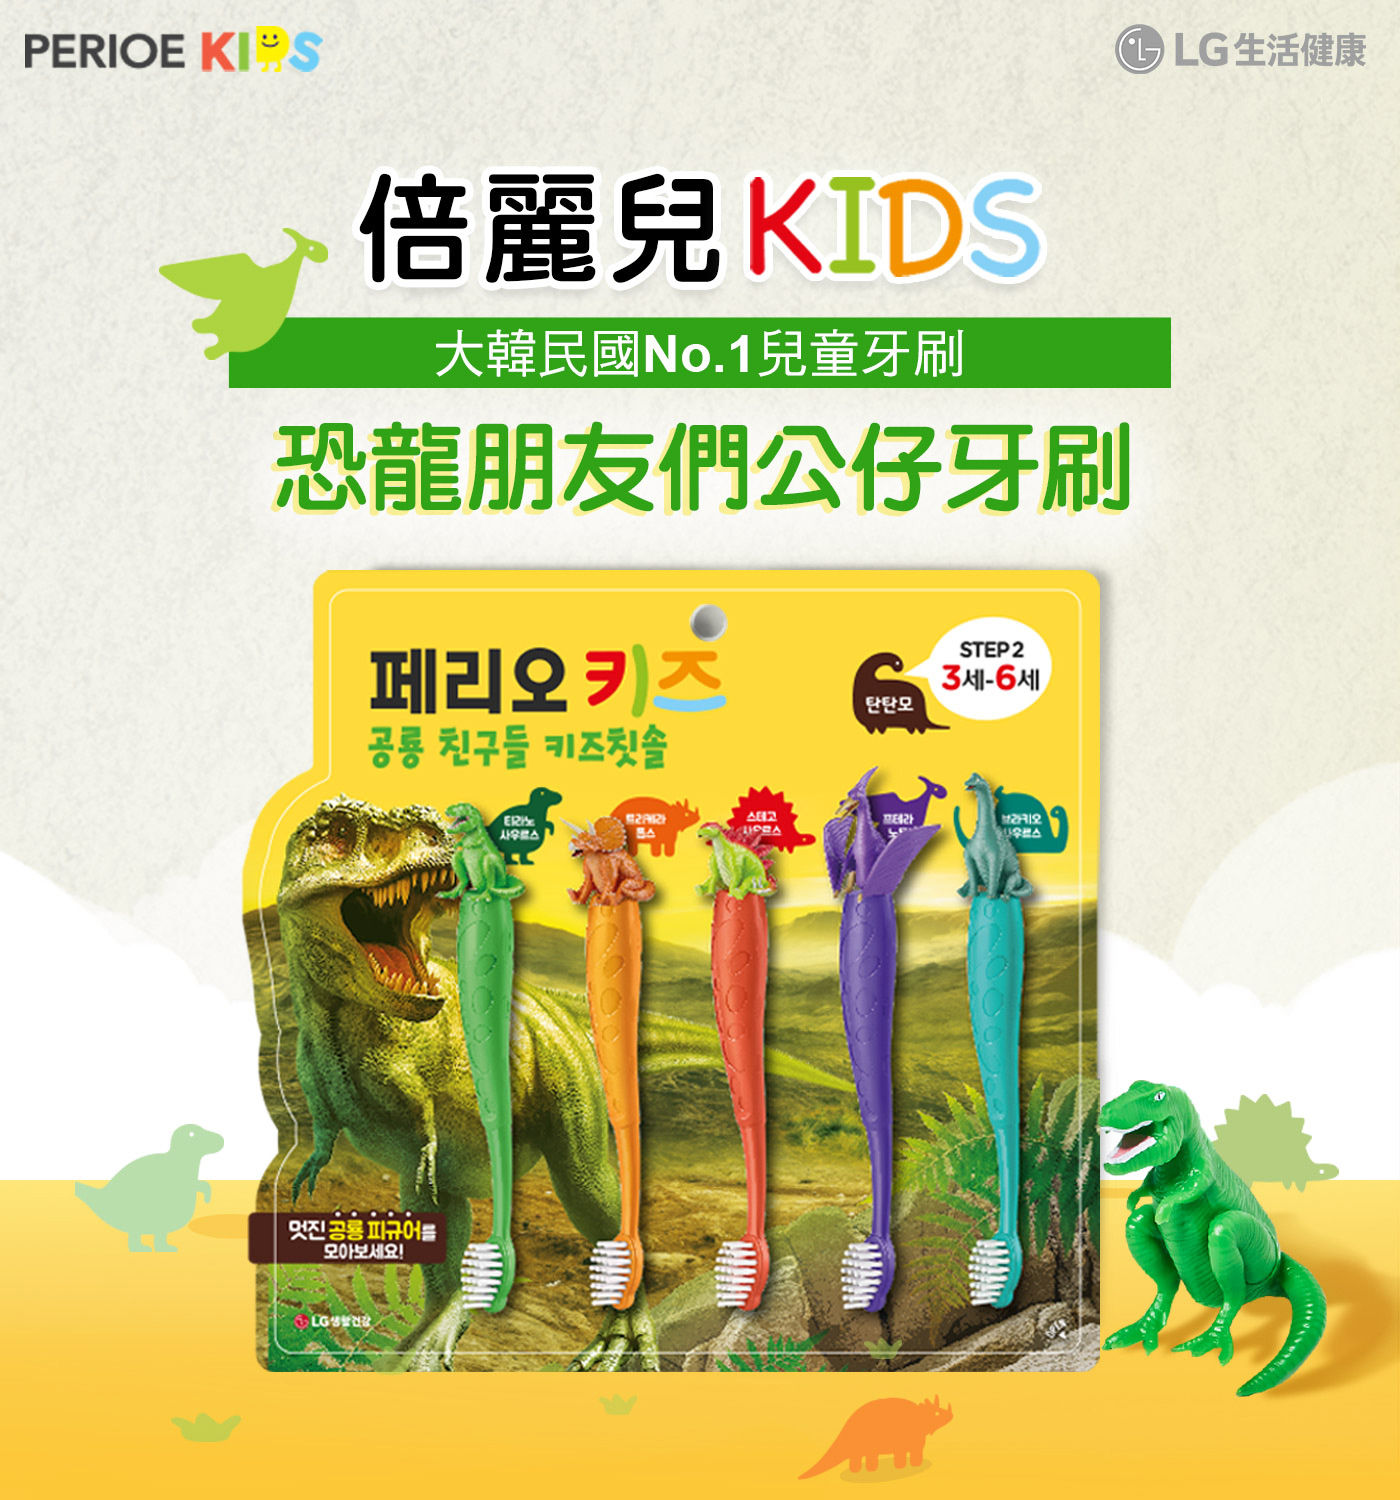 倍麗兒恐龍公仔兒童牙刷5入，韓國No.1兒童牙刷，恐龍朋友們公仔牙刷，可拆式恐龍公仔造型。